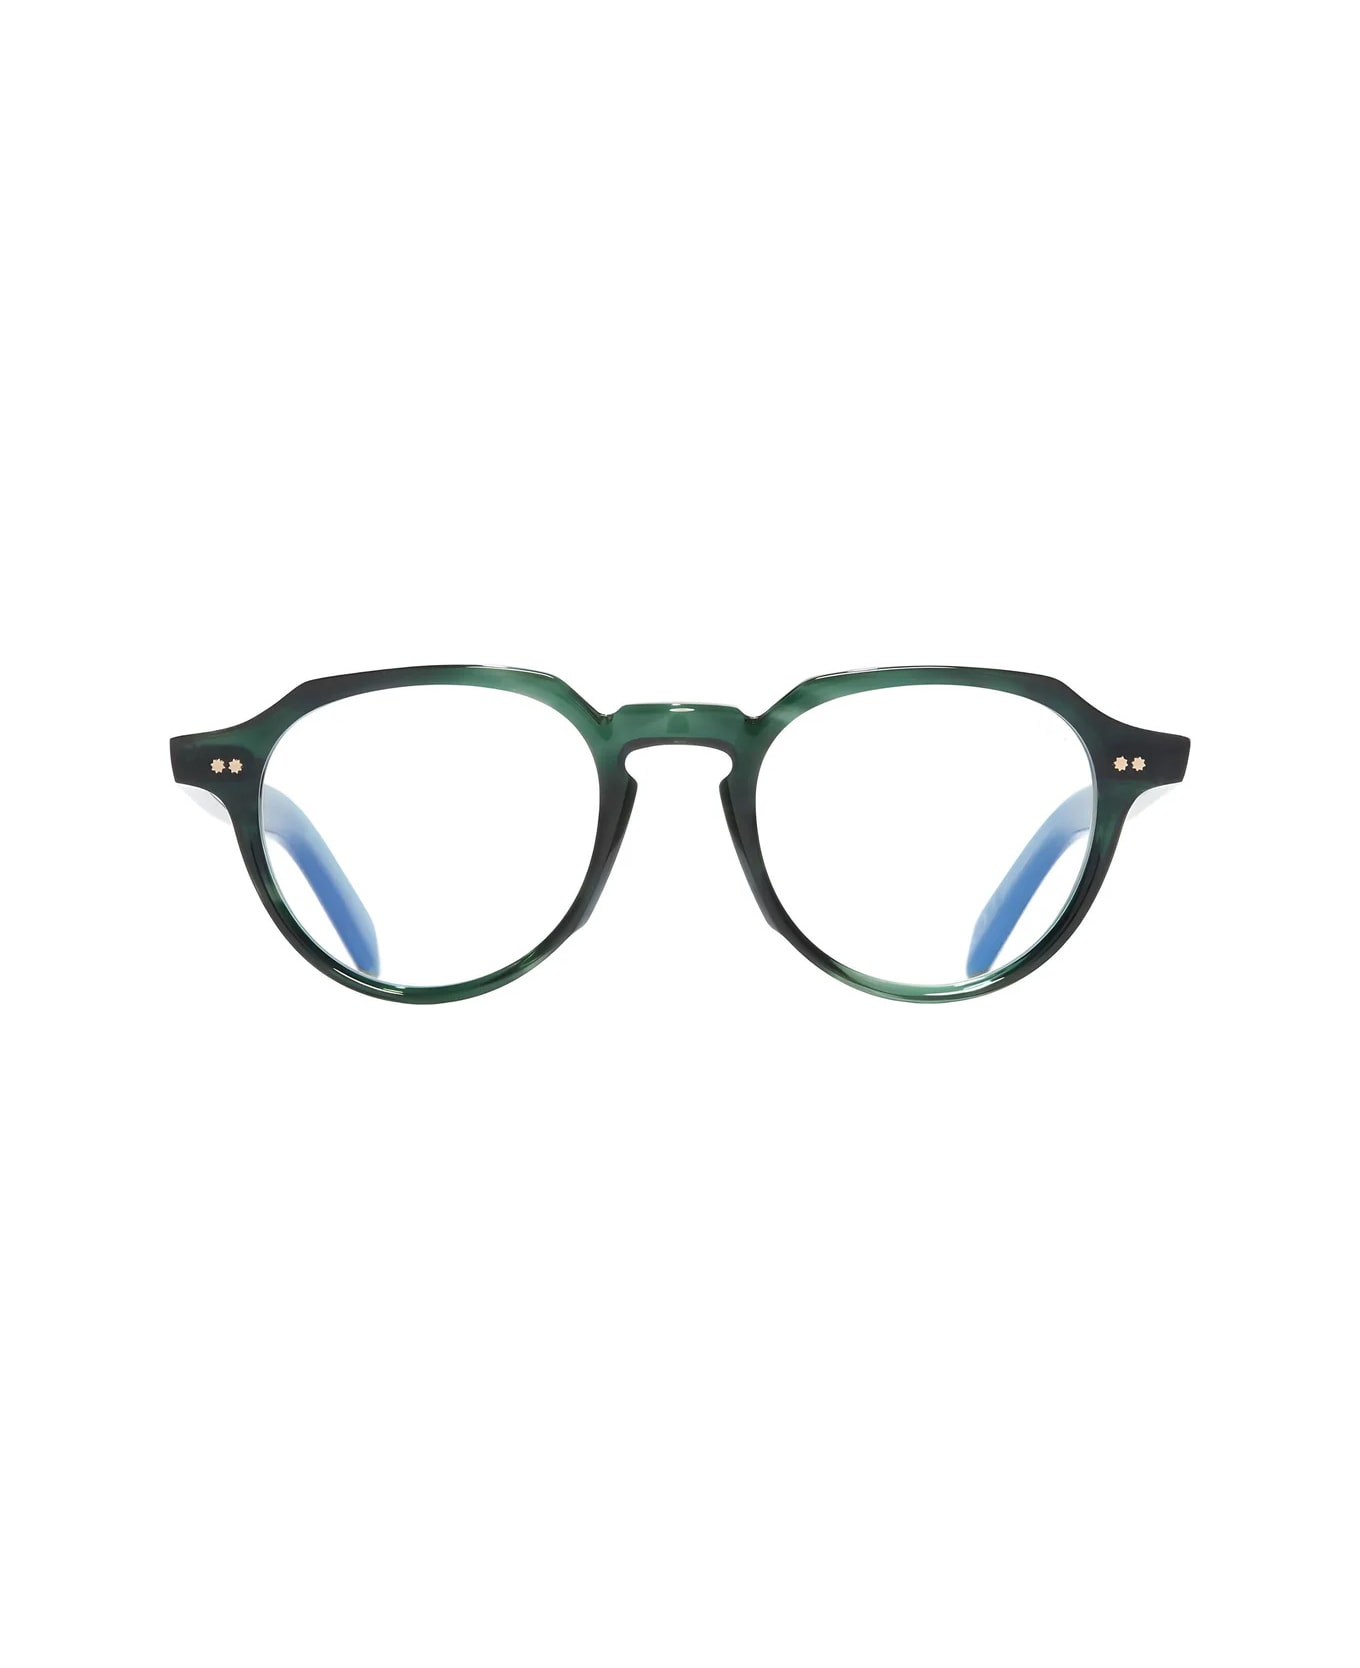 Cutler and Gross Gr06 03 Striped Dark Havana Glasses - Verde